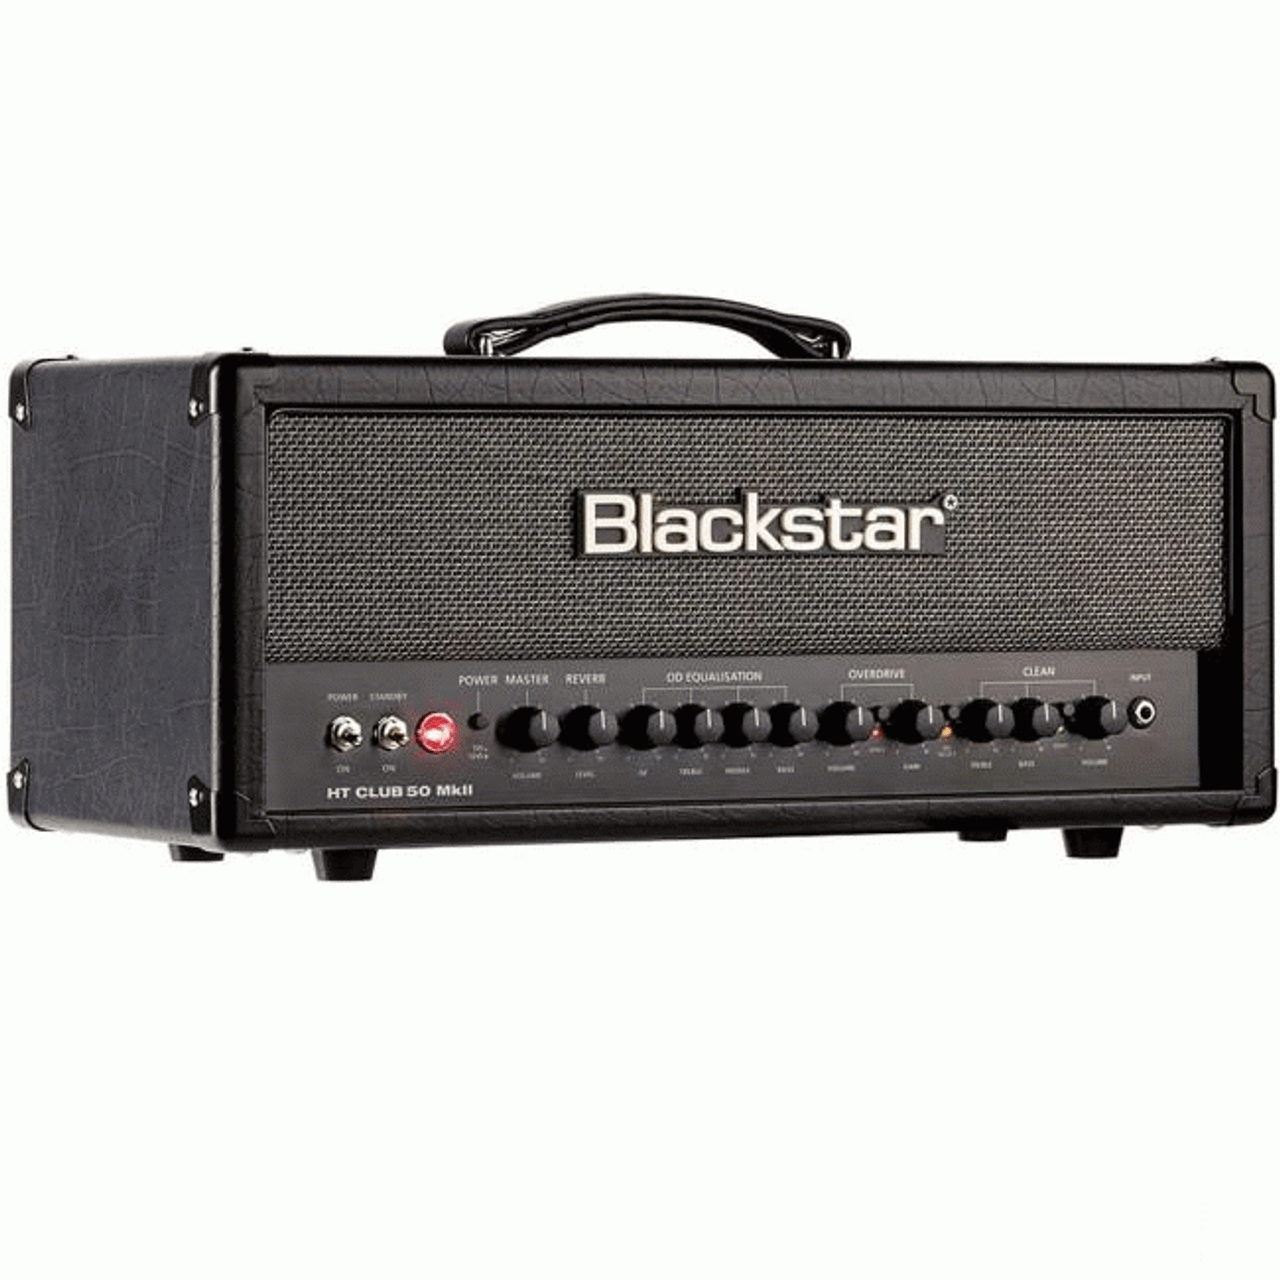 Blackstar 50 Watt Head Ht Mark 2